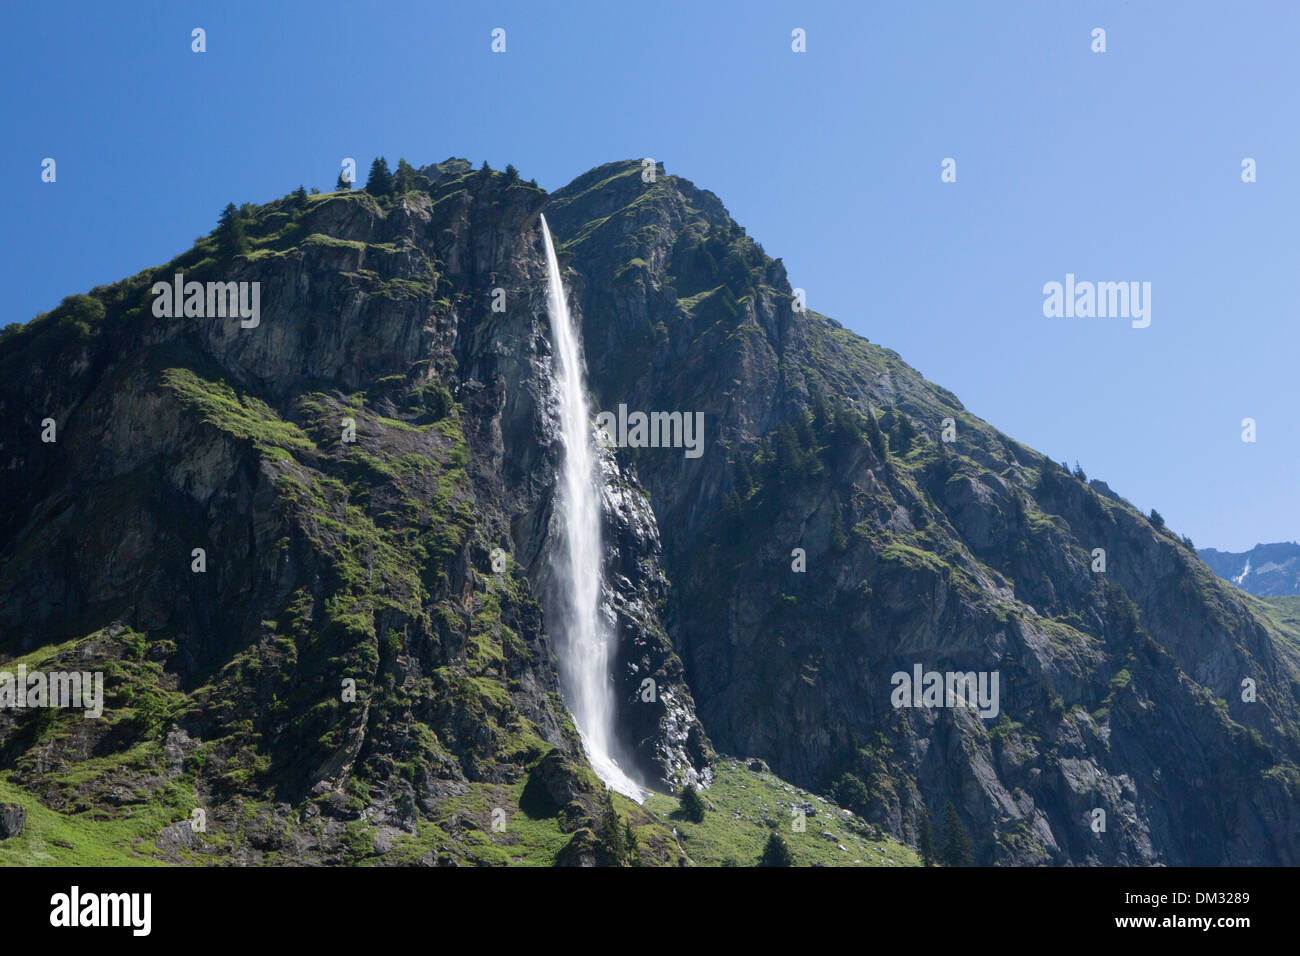 Europa, Schweiz, Kanton Wallis, Fluss, Fluss, Bach, Körper des Wassers, Wasser, Wasserfall, Fionney, Berg, Felsen Stockfoto